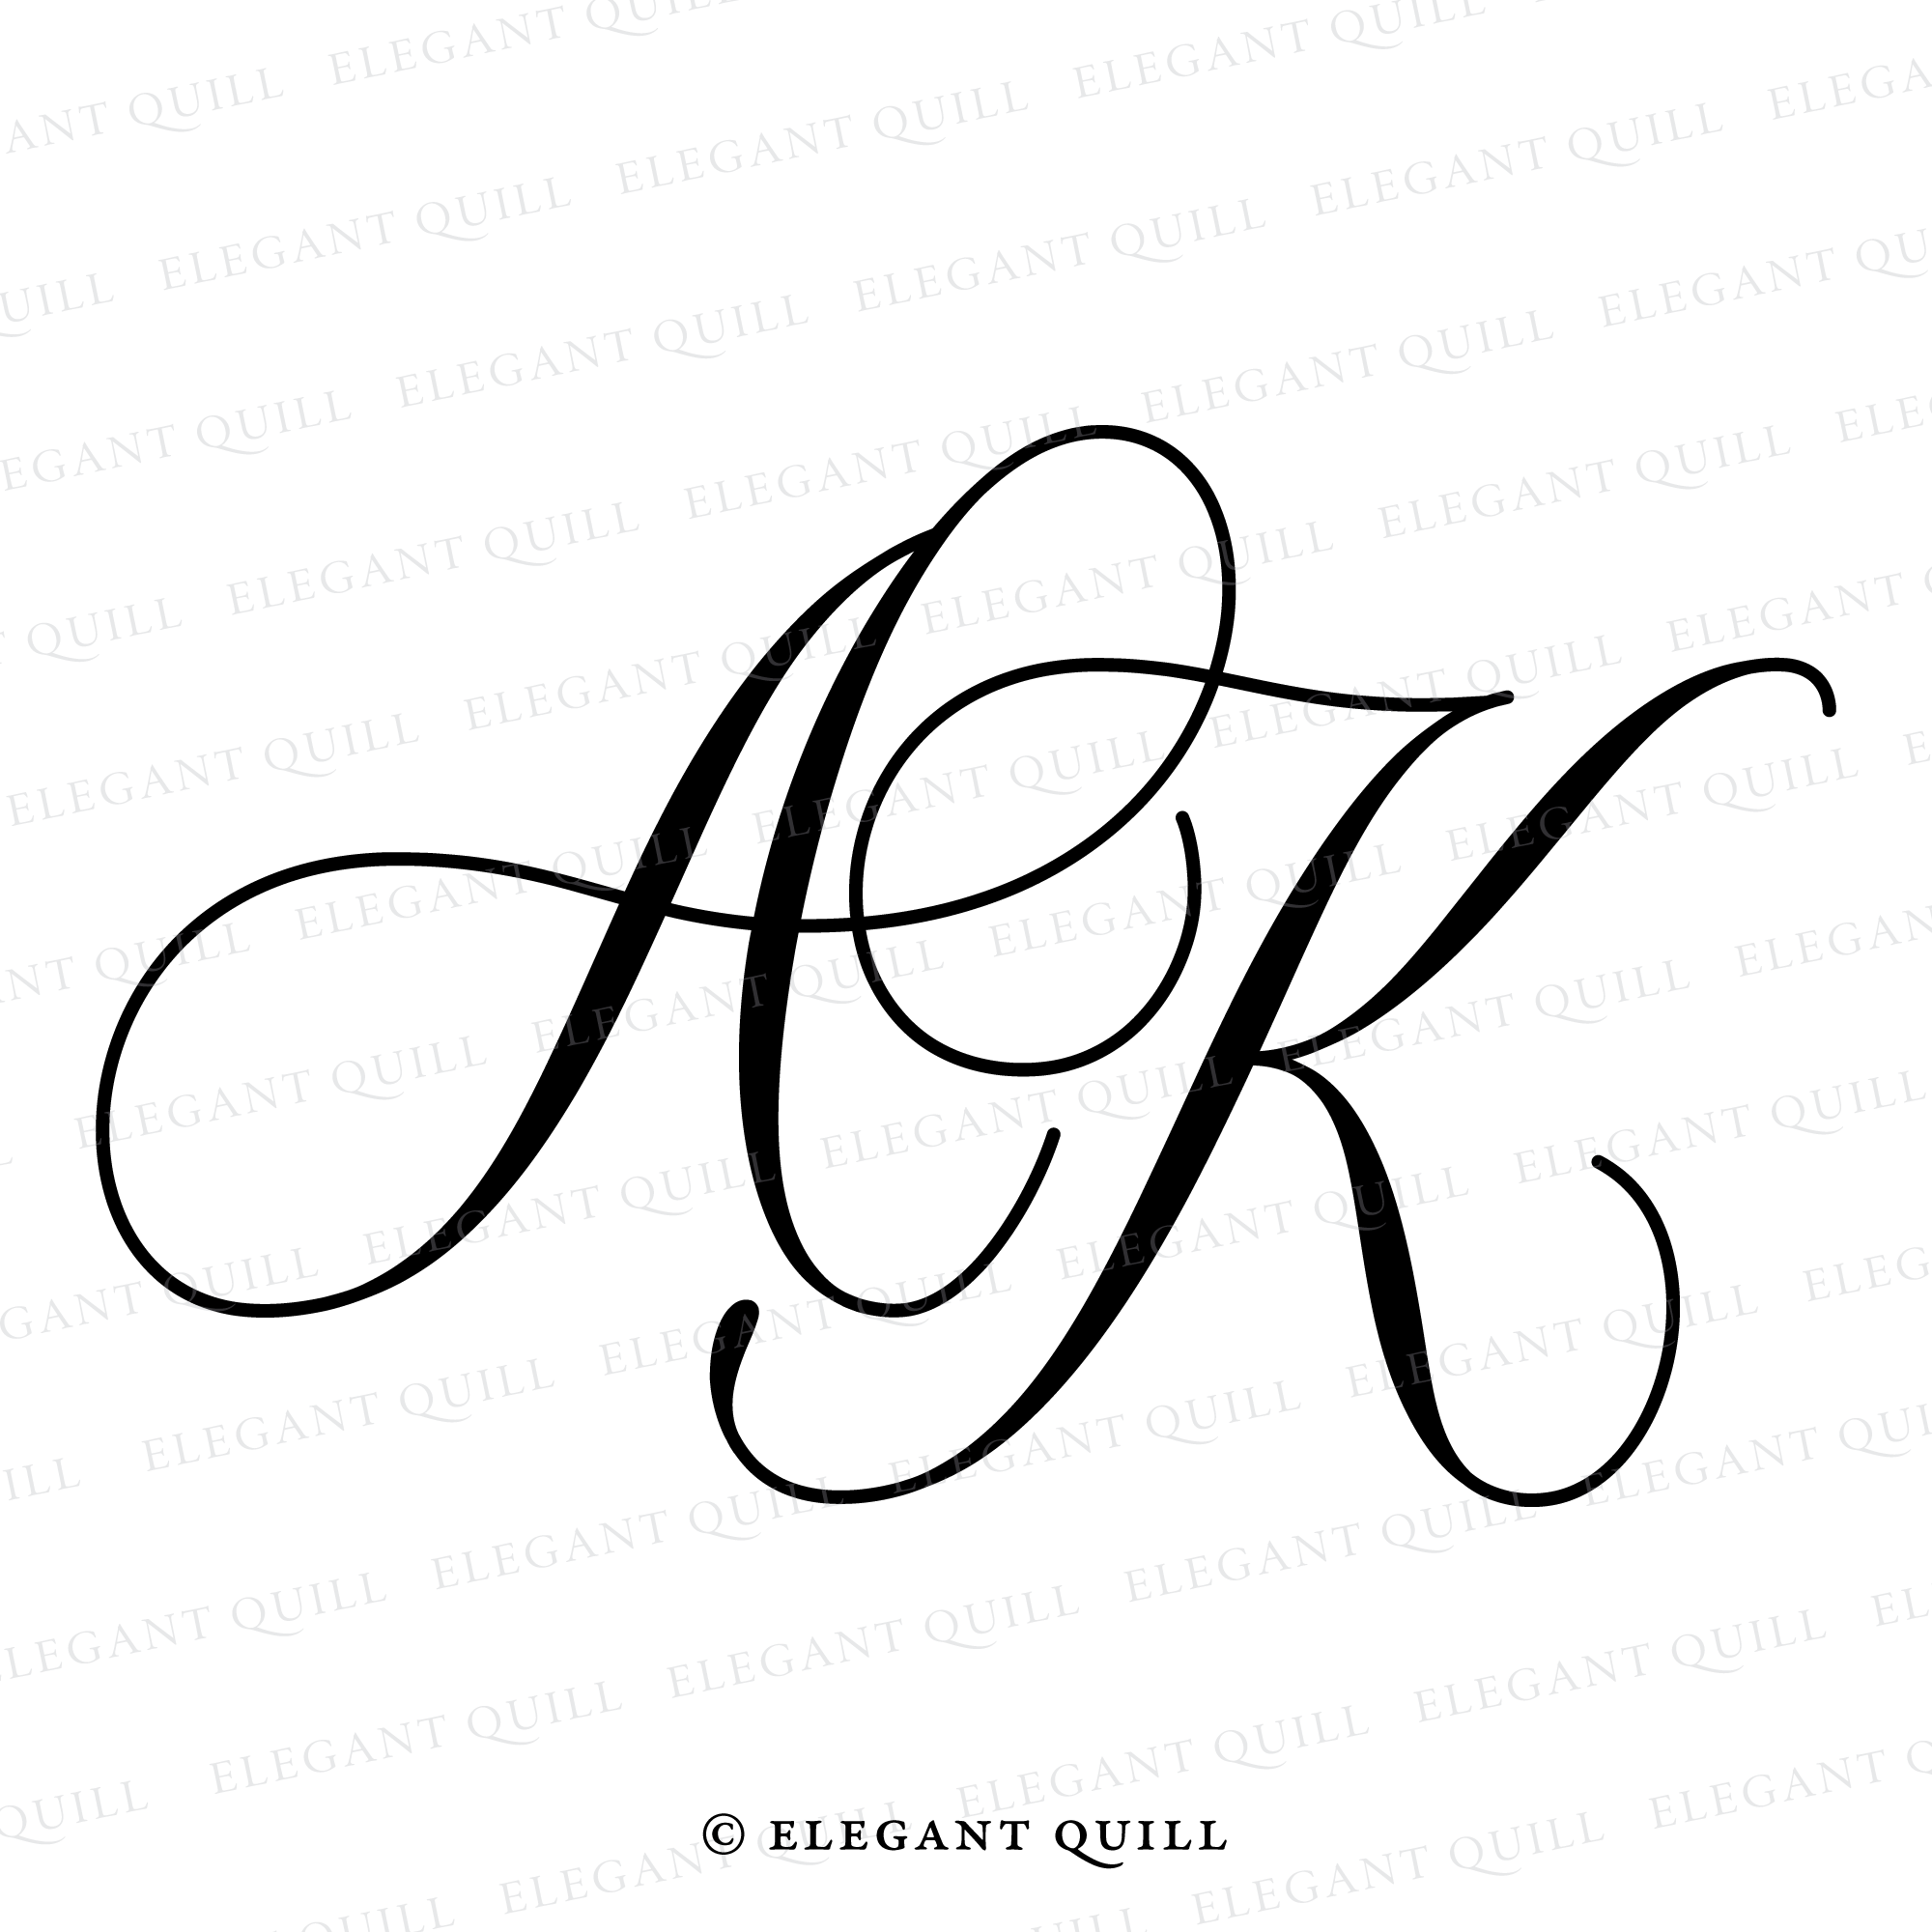 Initial Letter ak logo or ka logo vector design templates Stock Vector |  Adobe Stock